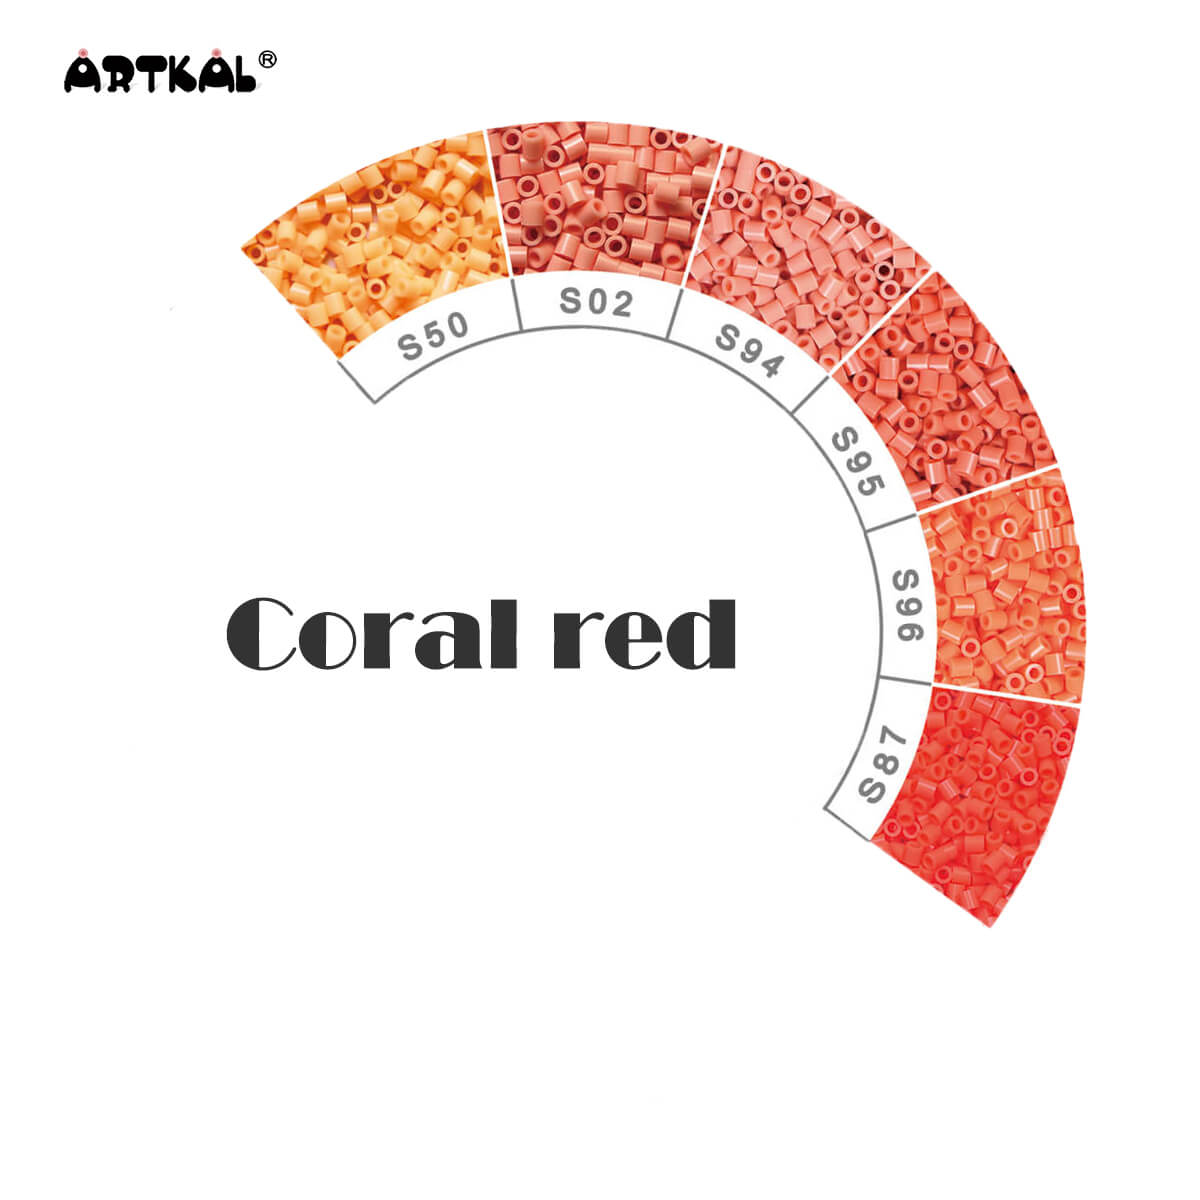 Koralrød-Midi 1000 perler Single Pack